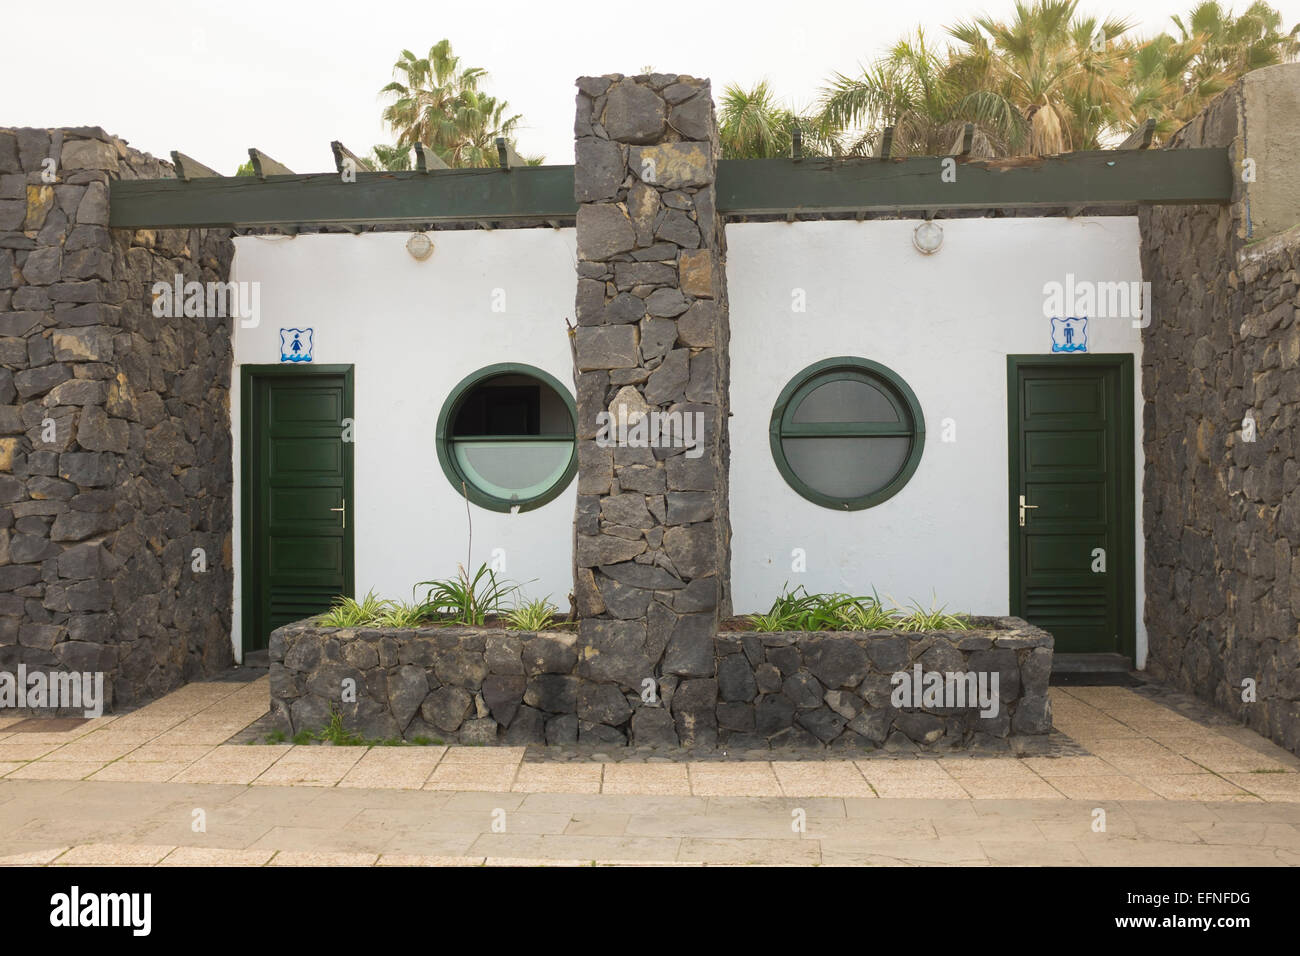 External view of ladies and gentlemens public toilets, Puerto de la Cruz, Tenerife, Canary Islands Stock Photo